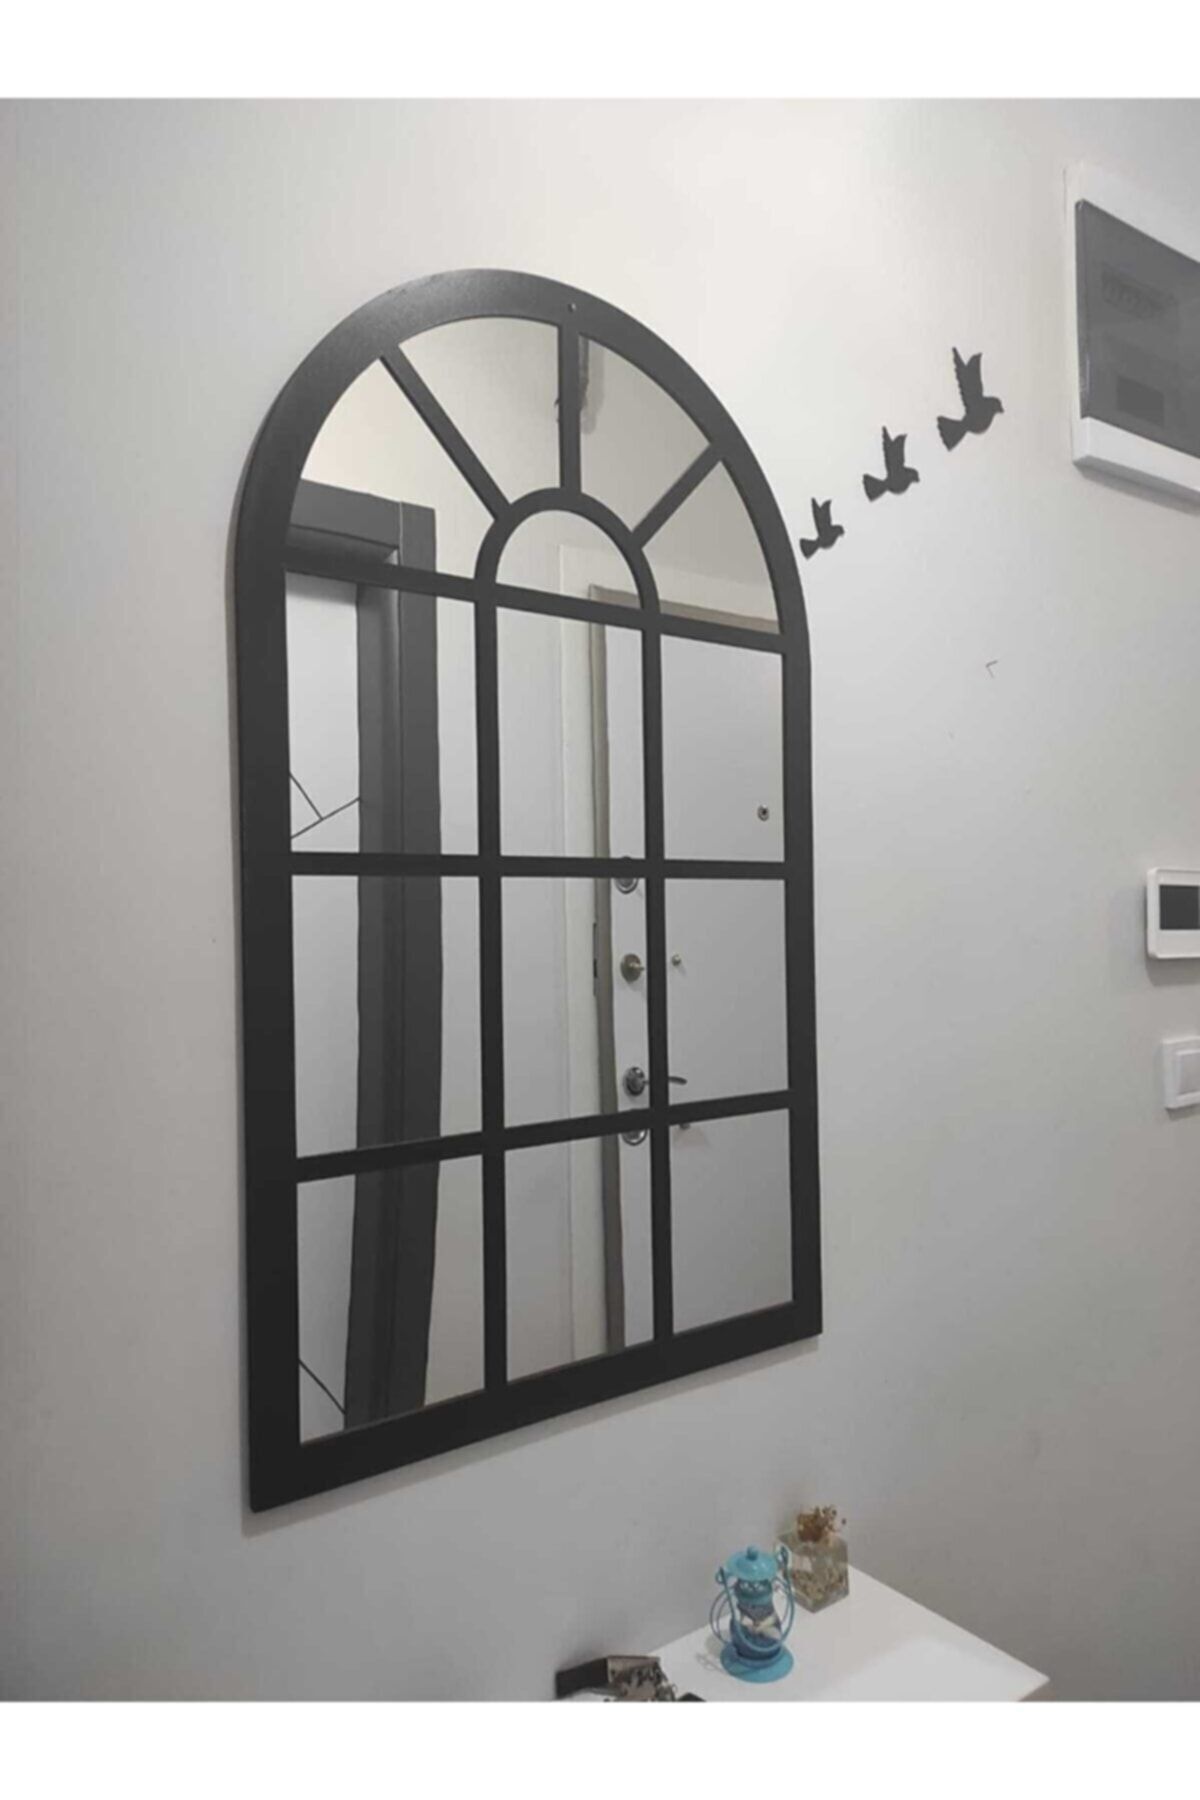 ONCA HEDİYELİK Dekoratif Pencere Ayna Boyalı Pleksi Aynalı Kullanıma Hazır 60x40 cm ve Üç Adet Kuş